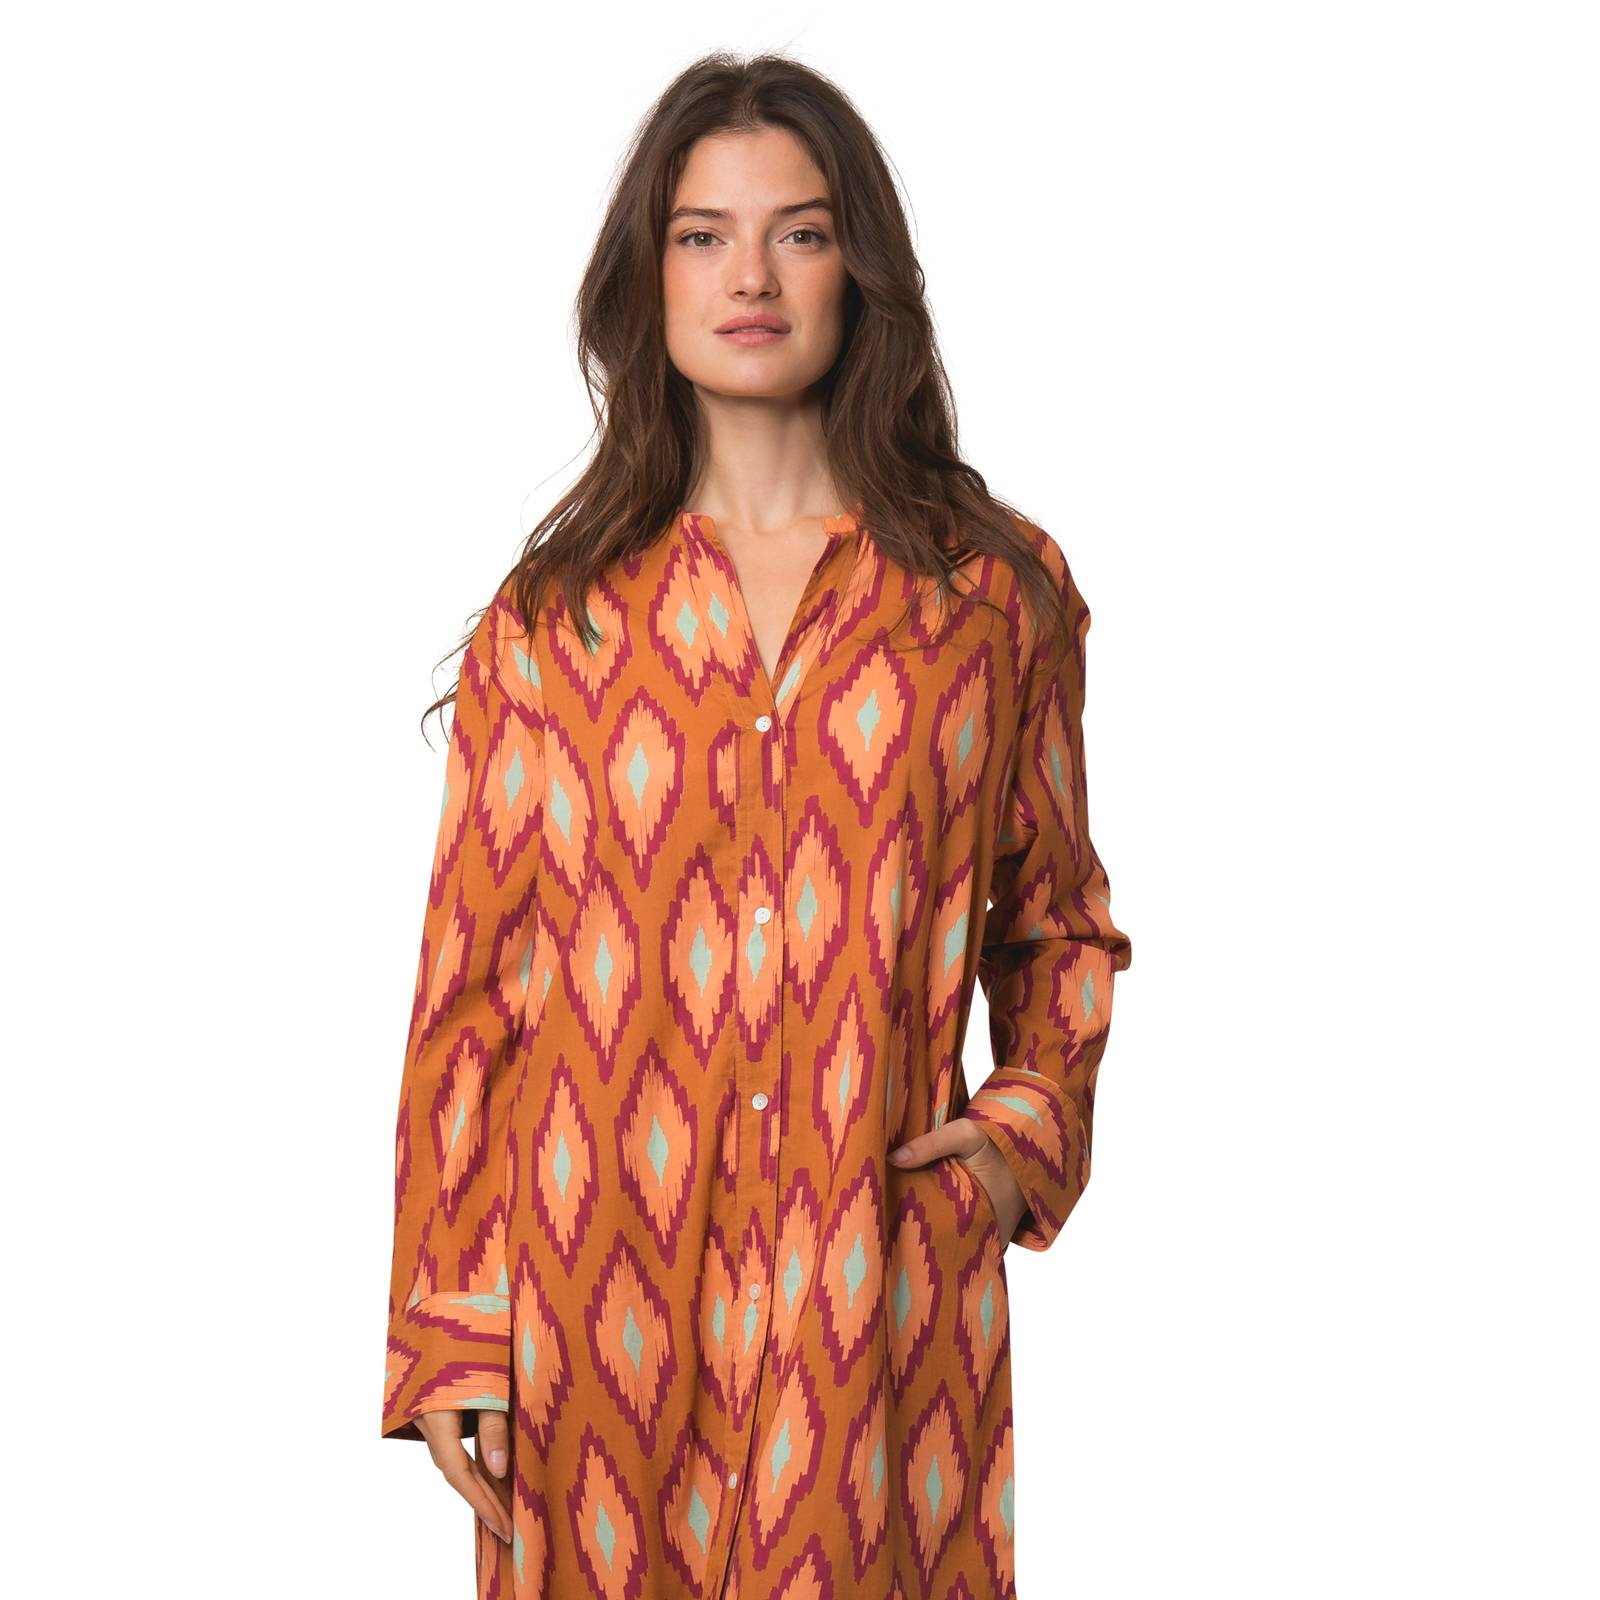 Robes Robe Alice Komba 100% Coton Ethnique VR4208 ORANGE